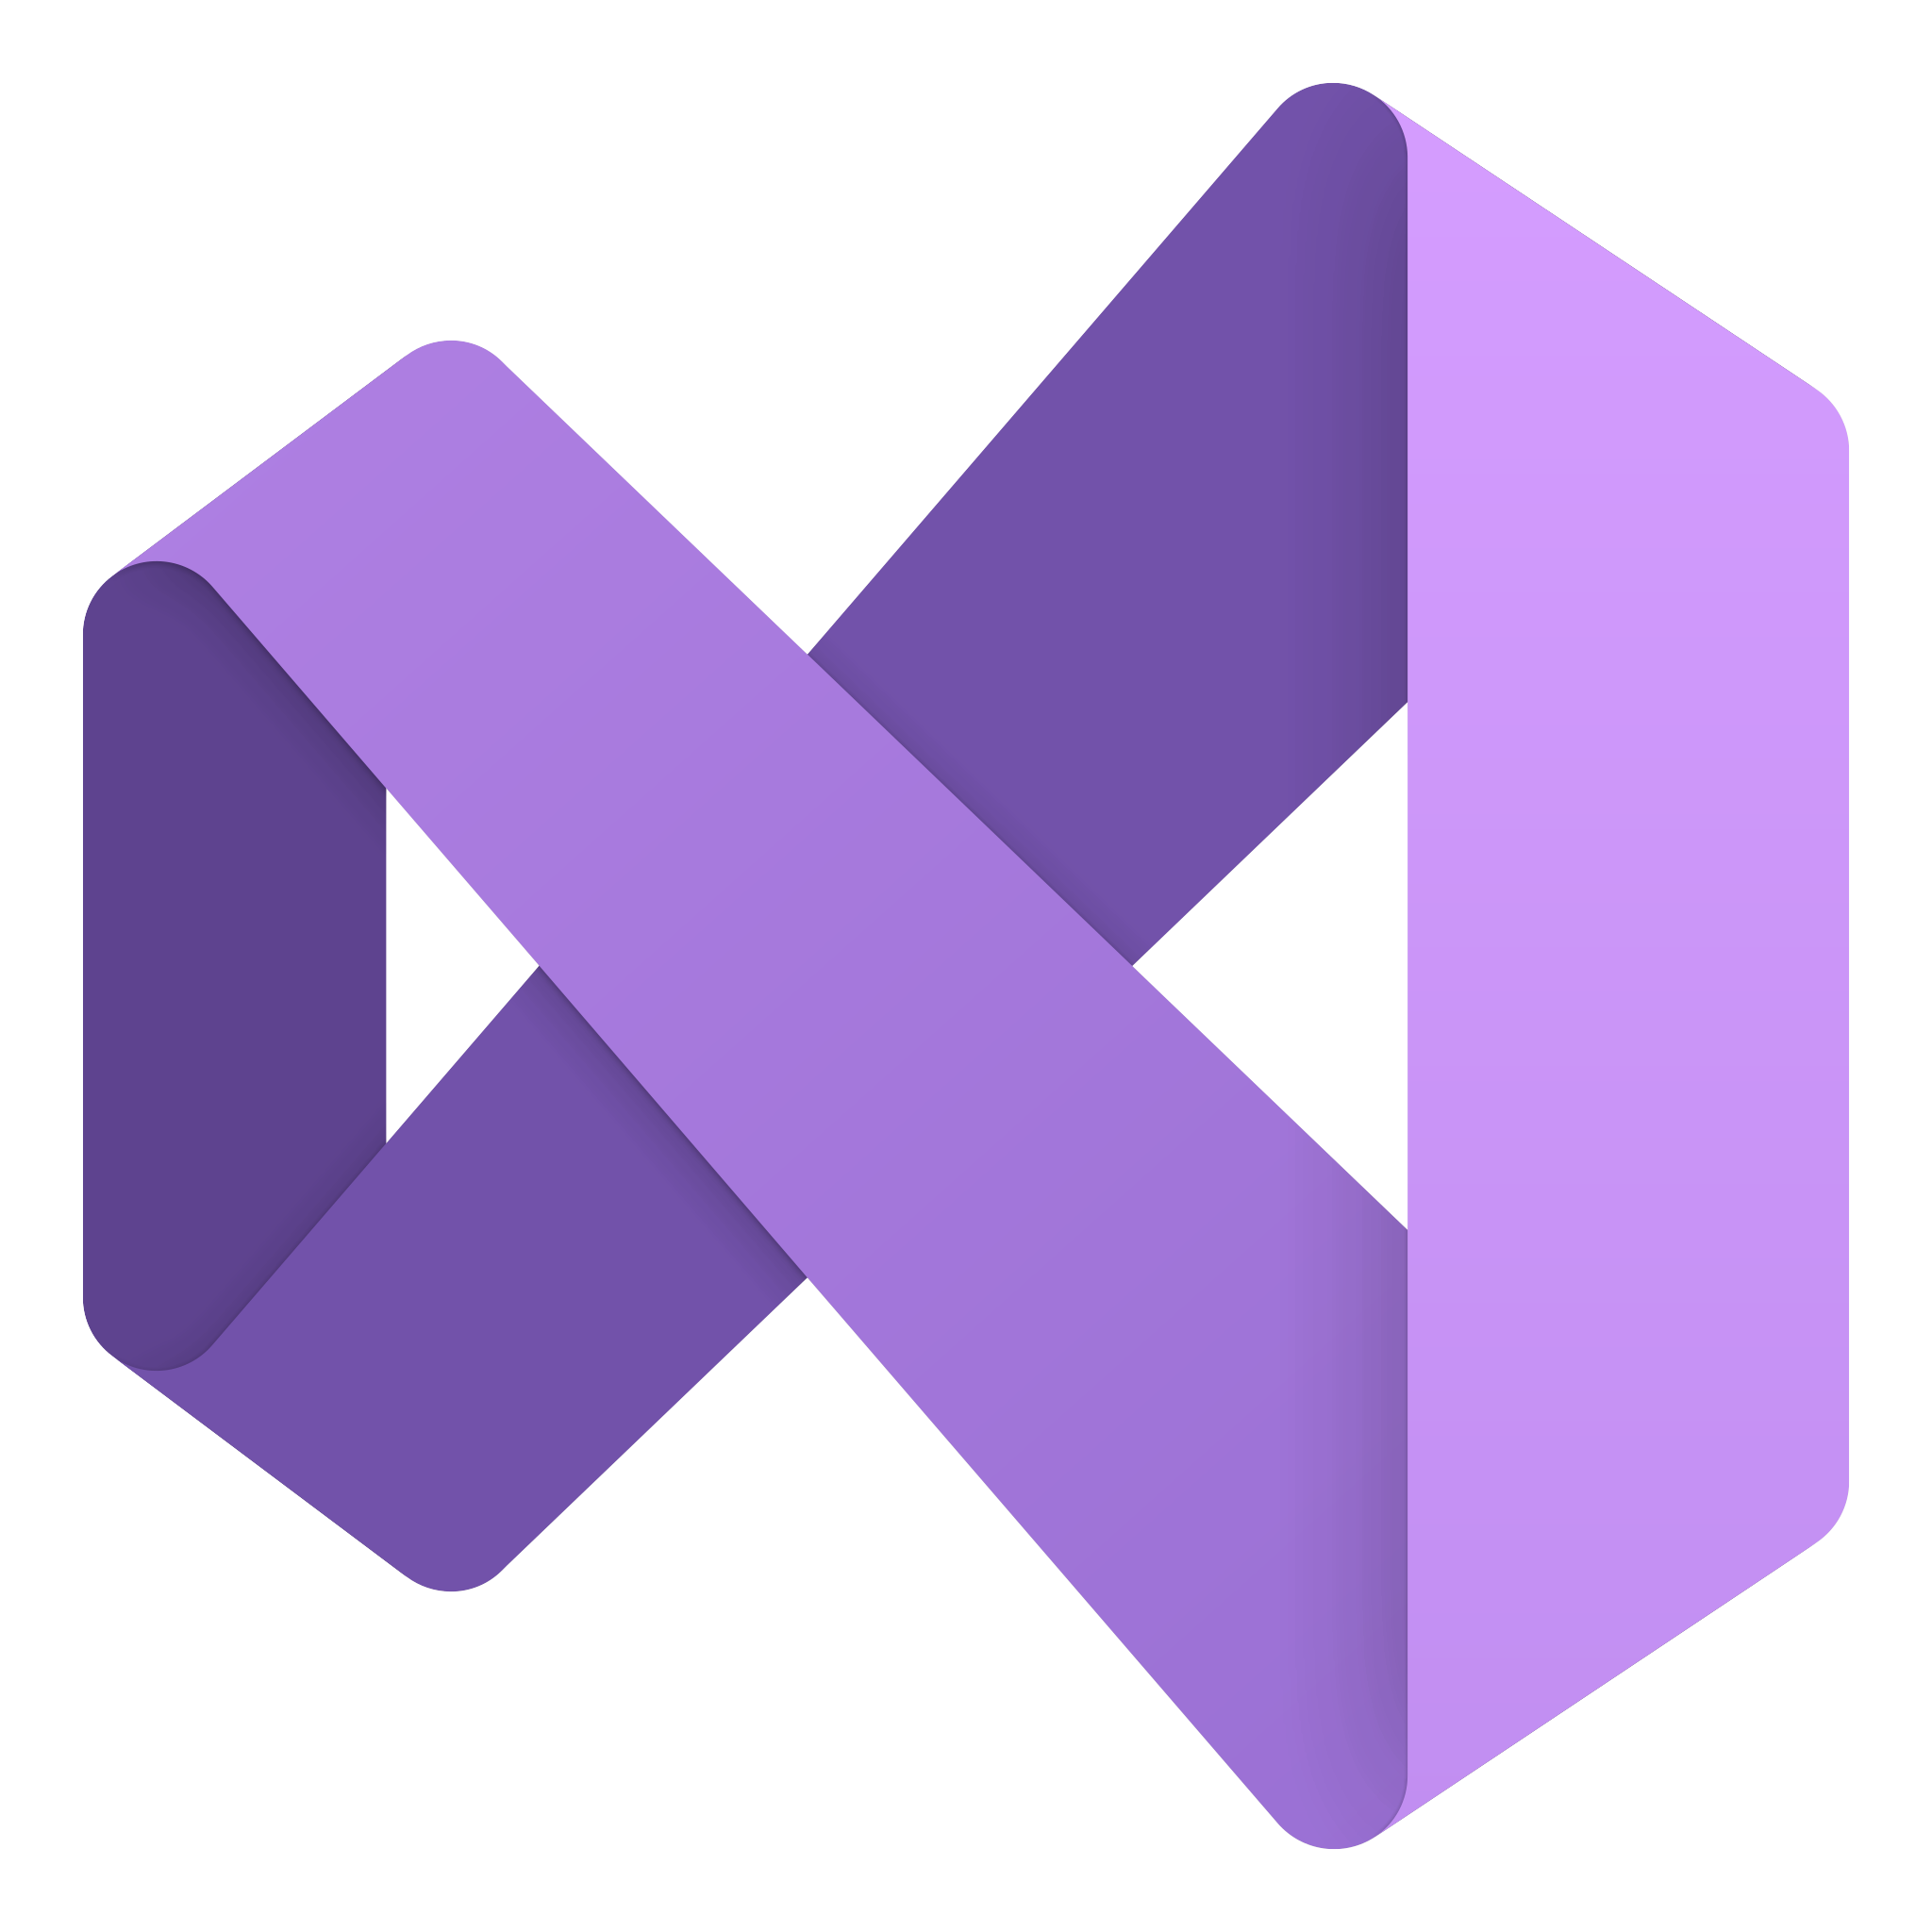 Logo de Visual Studio